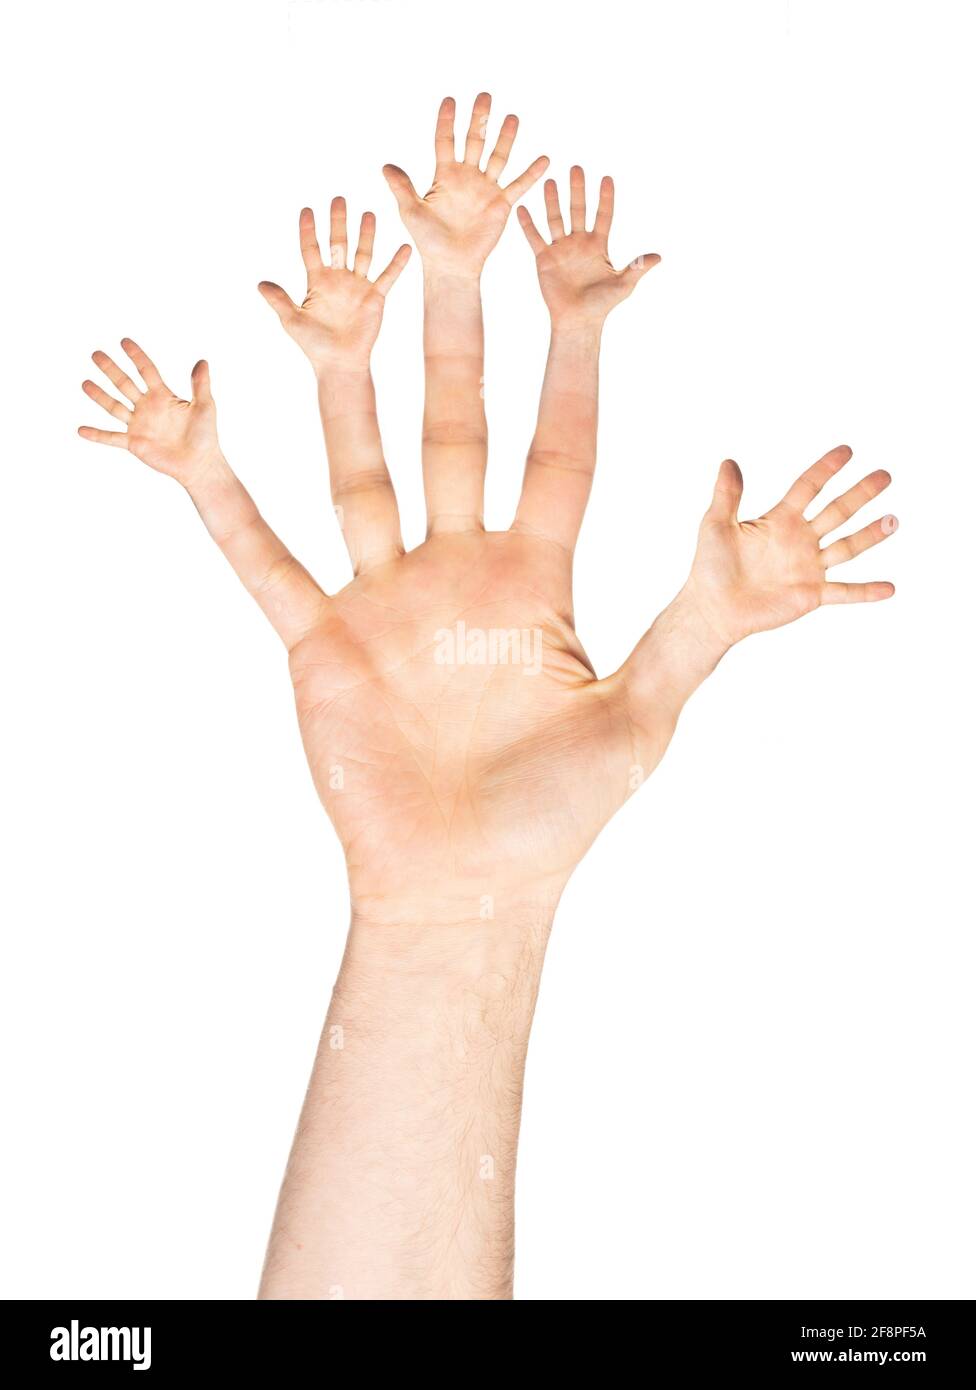 Main d'homme ouverte caucasienne avec doigts à main ouverte - geste numéro cinq ou vingt-cinq, isolé sur fond blanc Banque D'Images